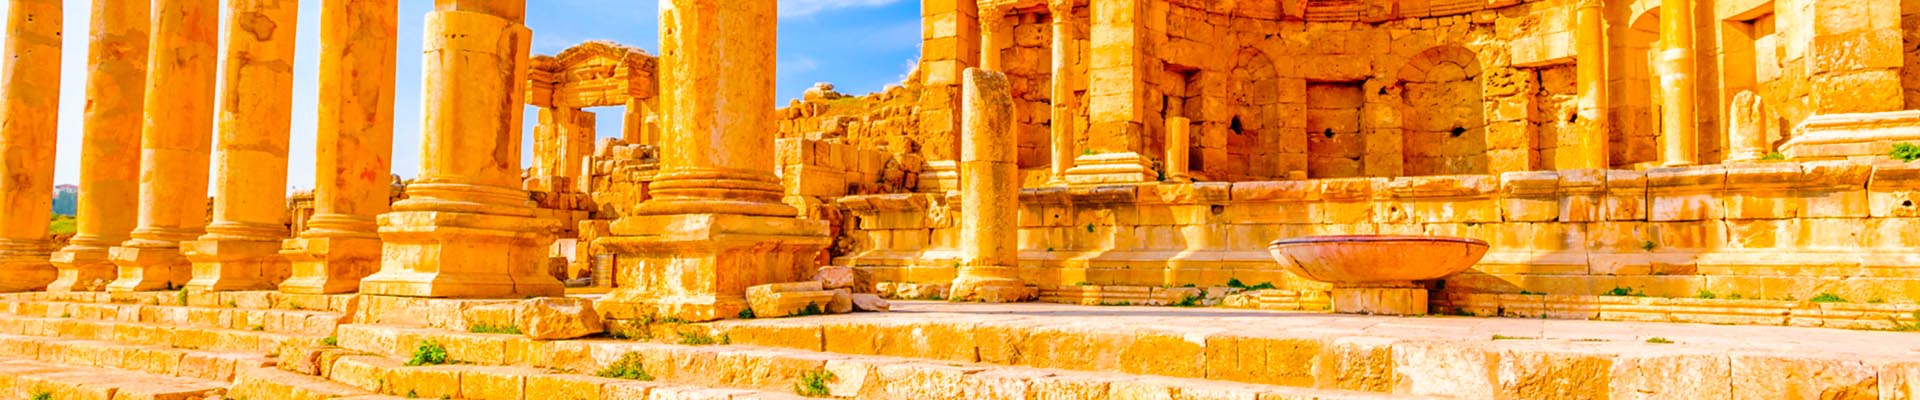 Treasures of Israel and Jordan with Wadi Rum 14 Day Tour